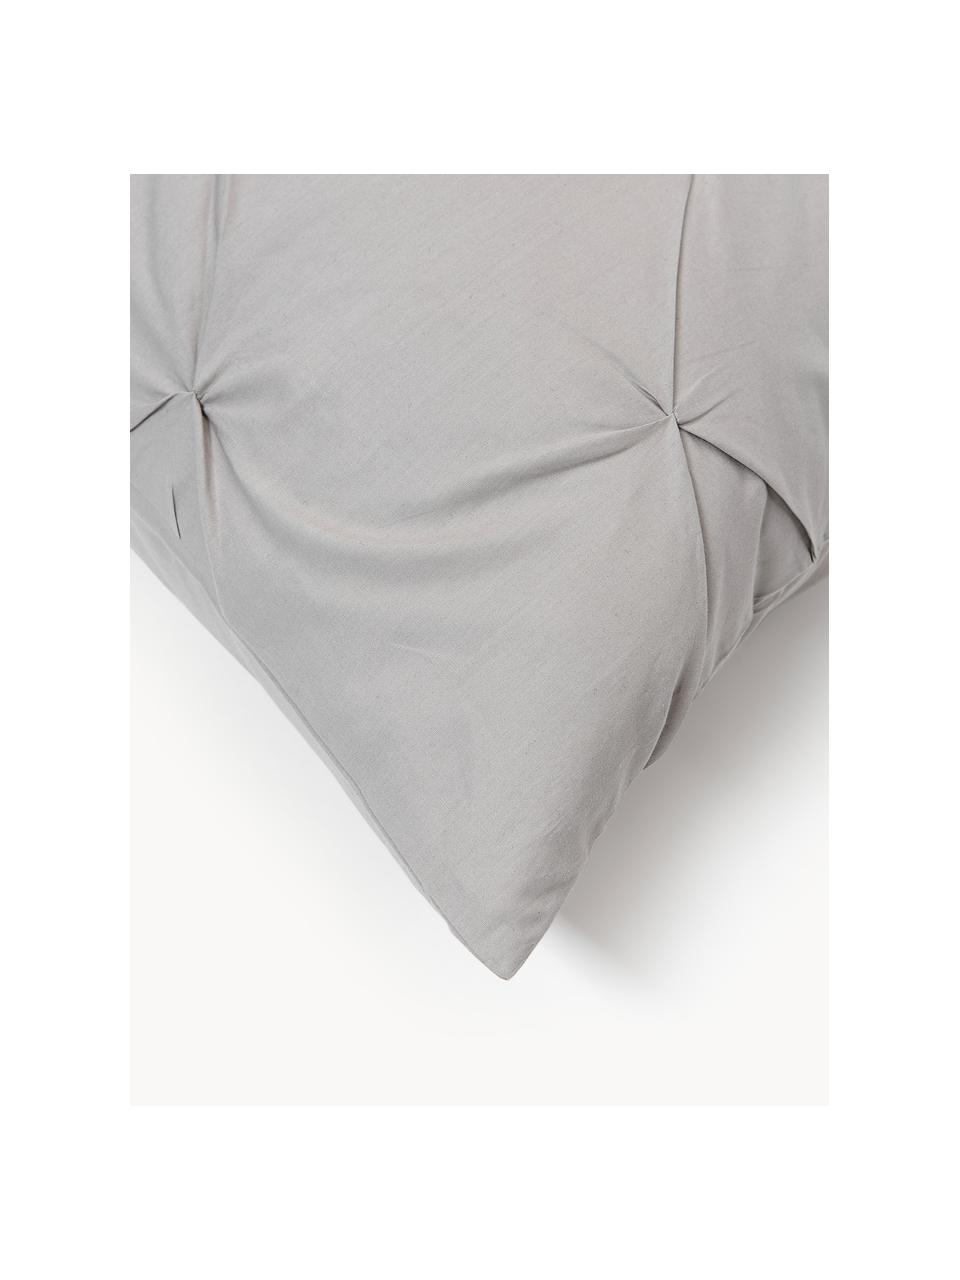 Taie d'oreiller en percale de coton avec piquage façon origami Brody, Gris, larg. 50 x long. 70 cm